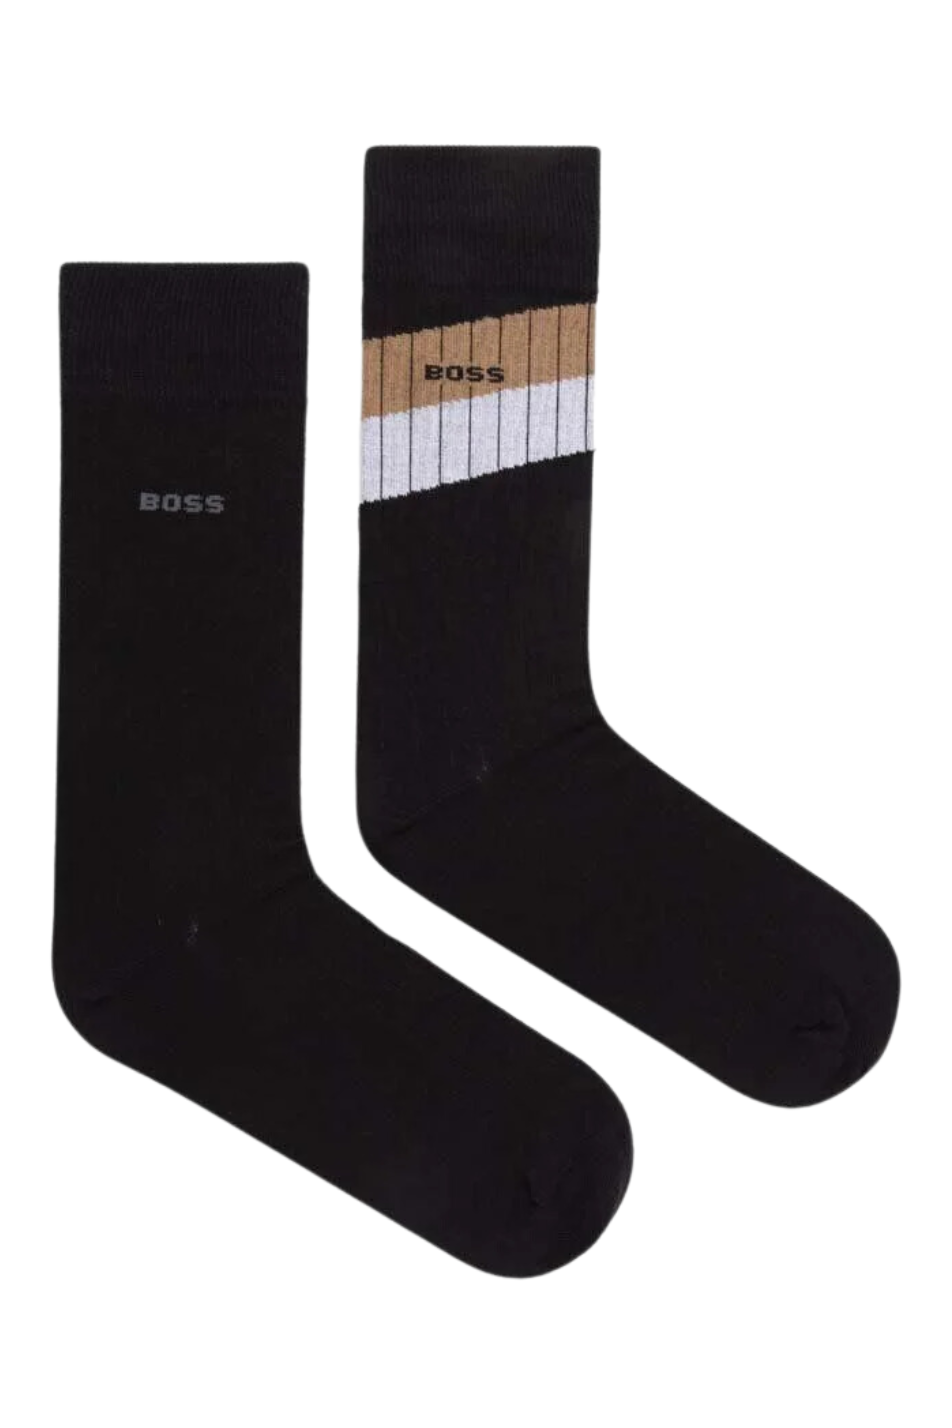 BOSS 2 Pack Men's Rib Socks